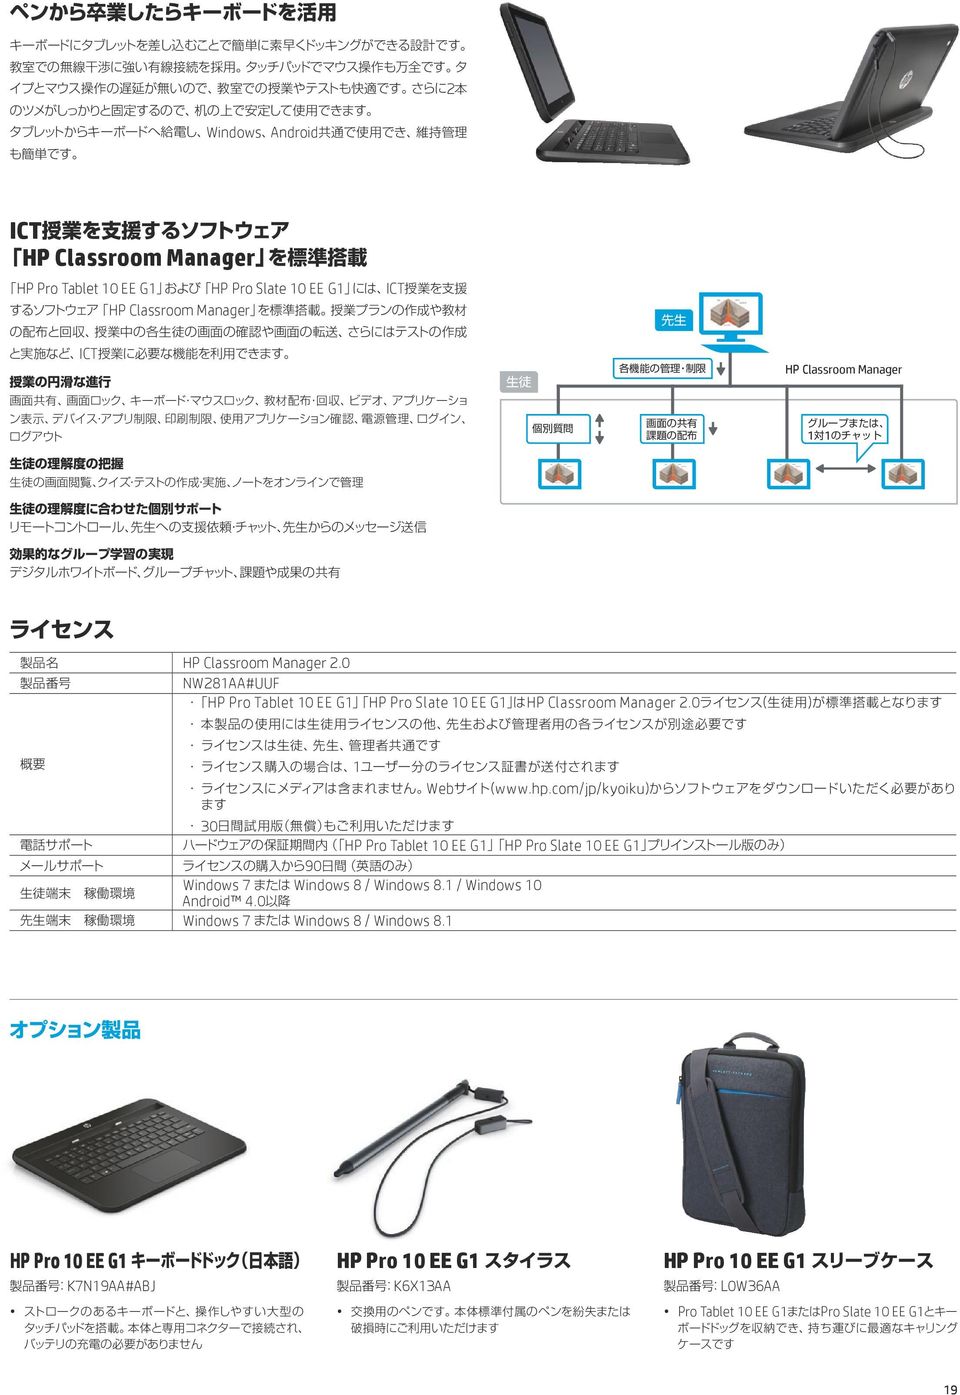 com/jp/kyoiku) 30 HP Pro Tablet 10 EE G1 HP Pro Slate 10 EE G1 90 Windows 7 Windows 8 / Windows 8.1 / Windows 10 Android 4.